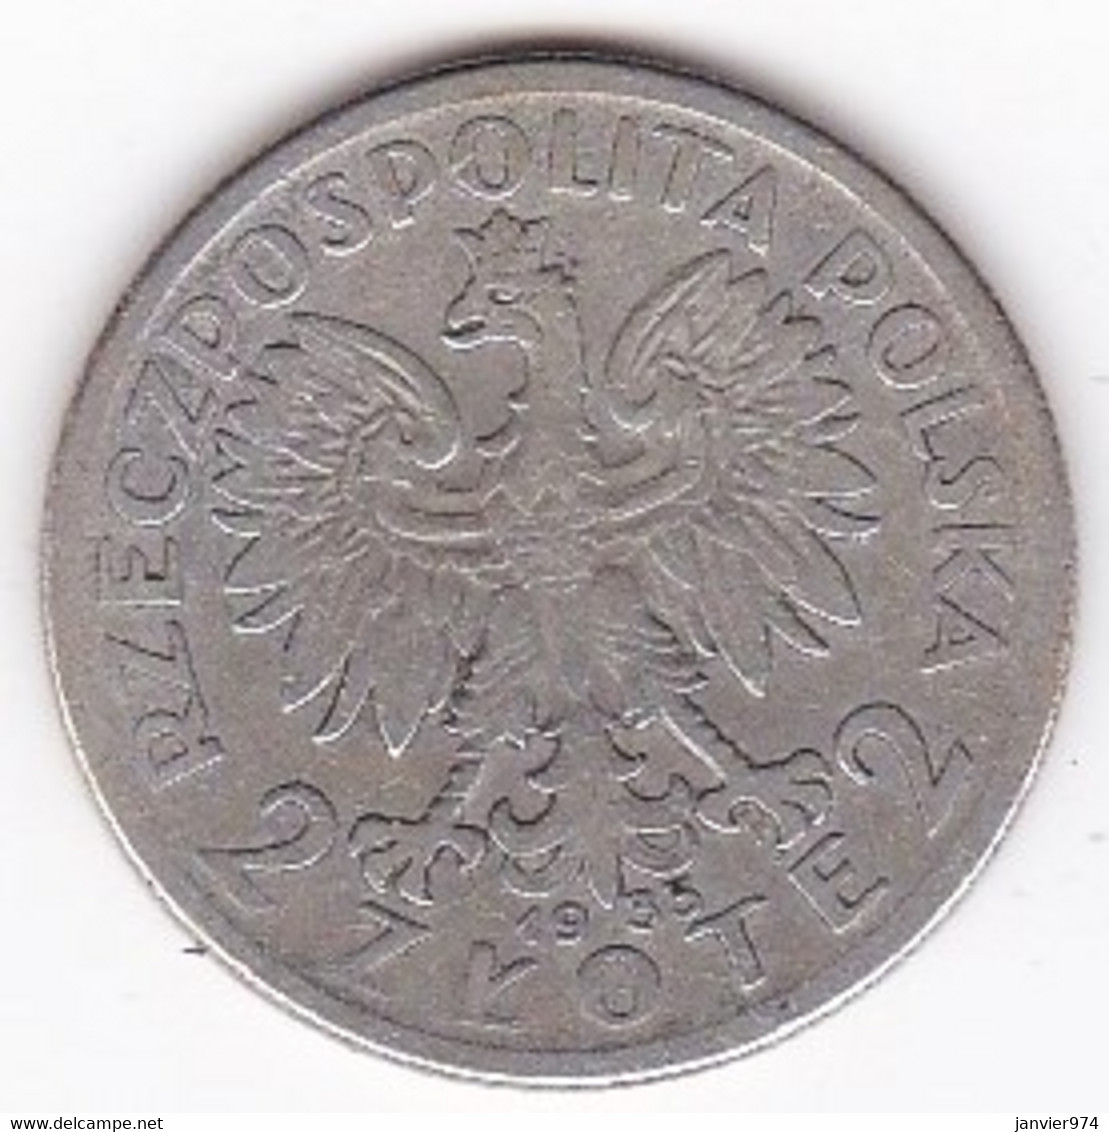 POLOGNE . 2 ZLOTE 1933. ARGENT - Polen